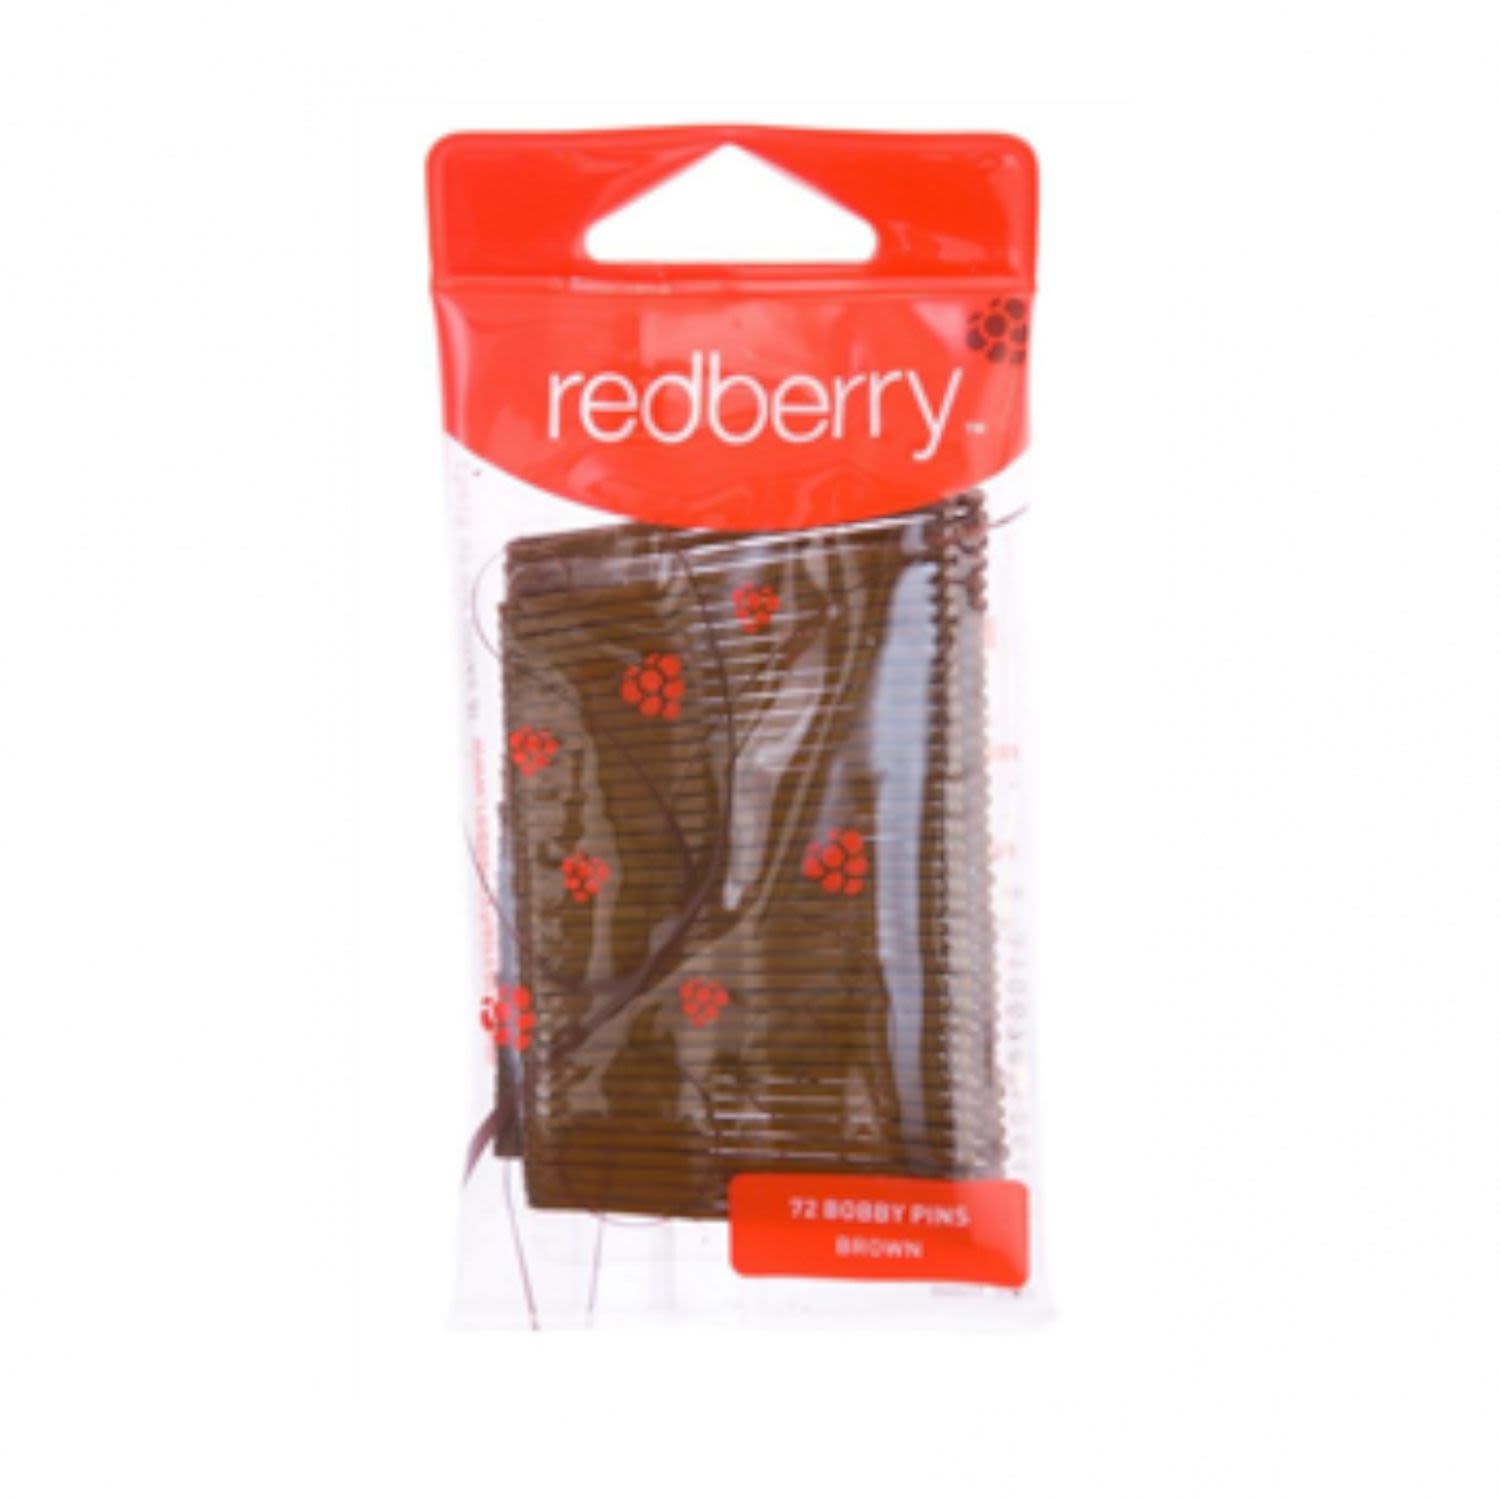 Redberry Small Brown Hair Pins, 72 Each